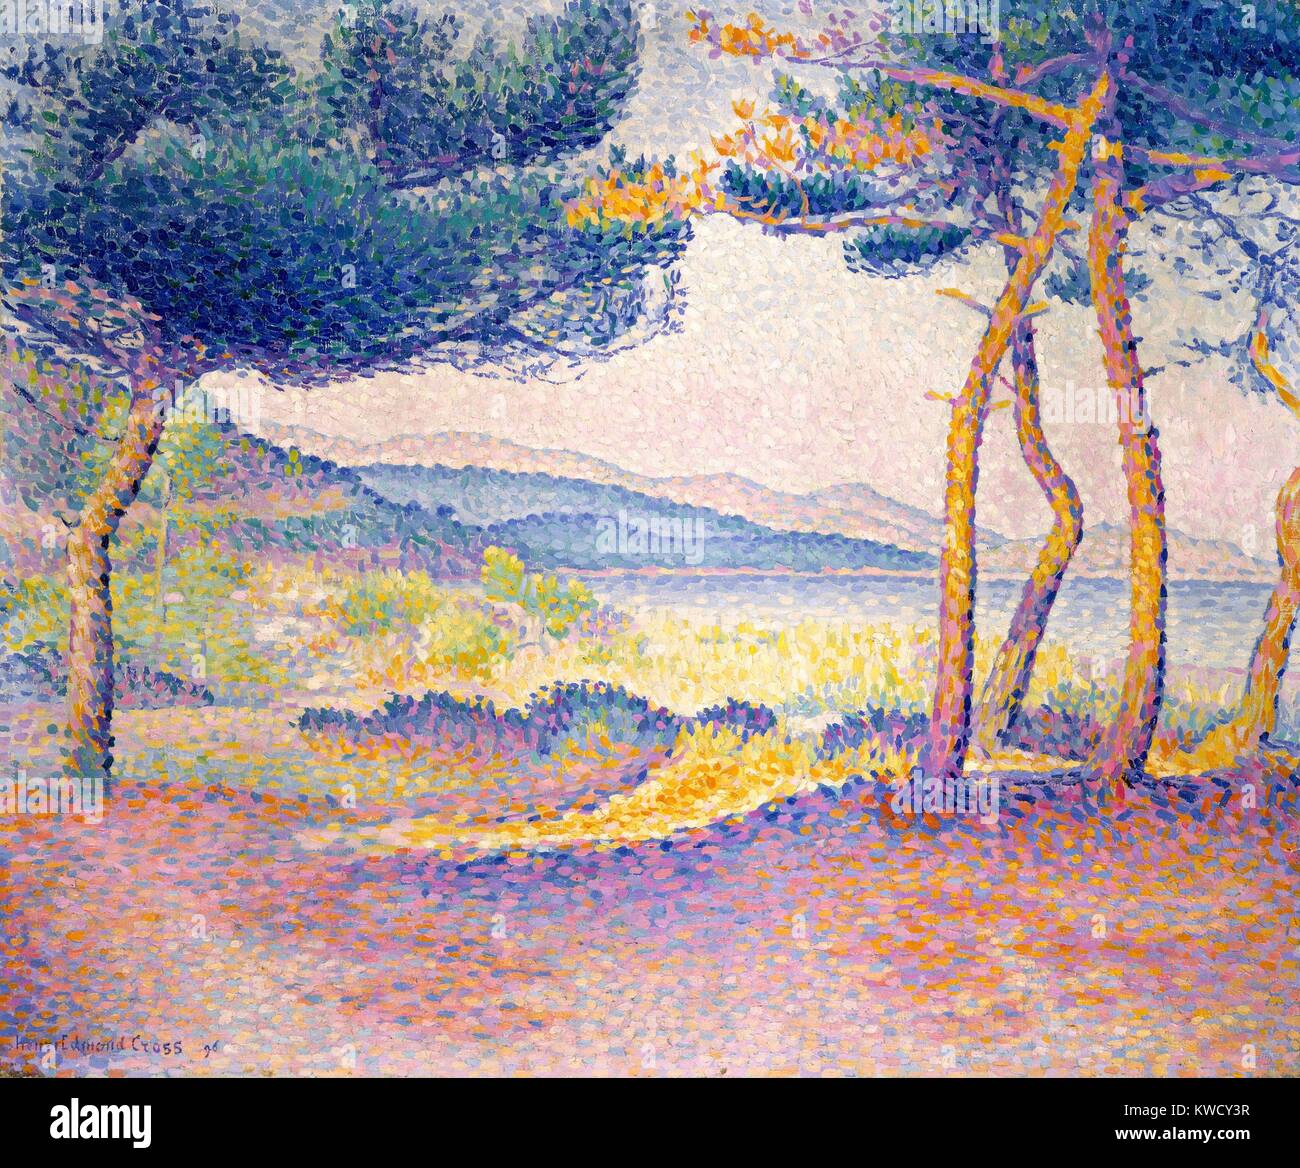 Pini lungo la riva, da Henri-Edmond Cross, 1896, neo-impressionisti francesi, olio su tela. Dipinto in Francia del sud del Mediterraneo (BSLOC 2017 5 104) Foto Stock